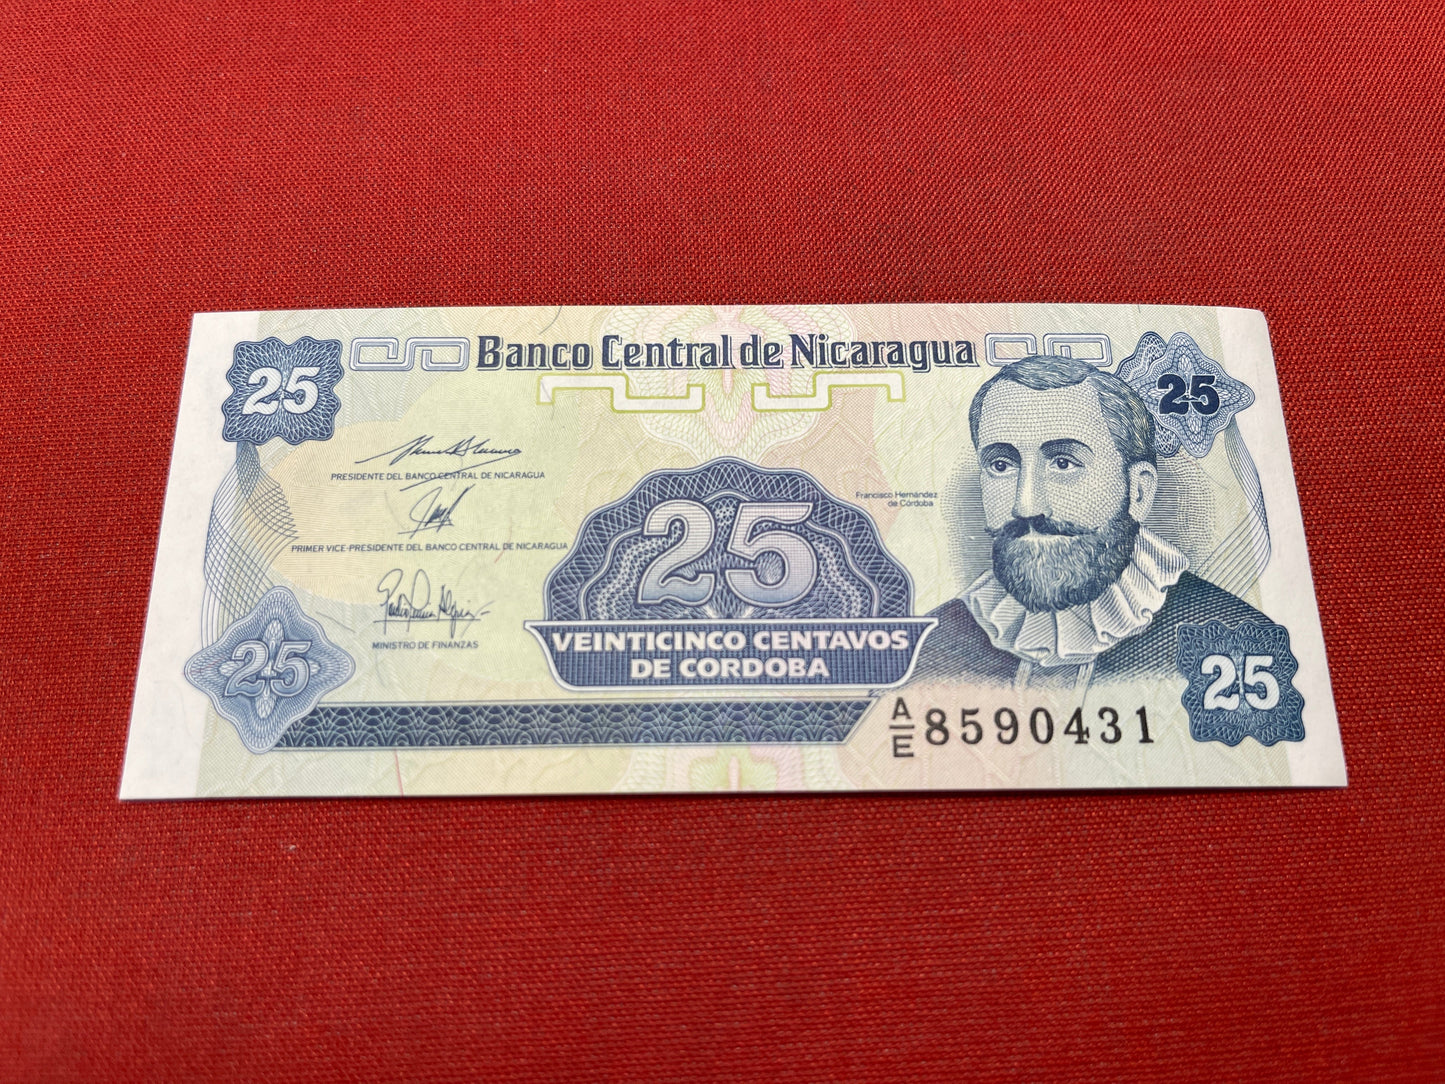 Banco Central Nicaragua 25 Diez Centavos De Cordoba Serial AE 8590431